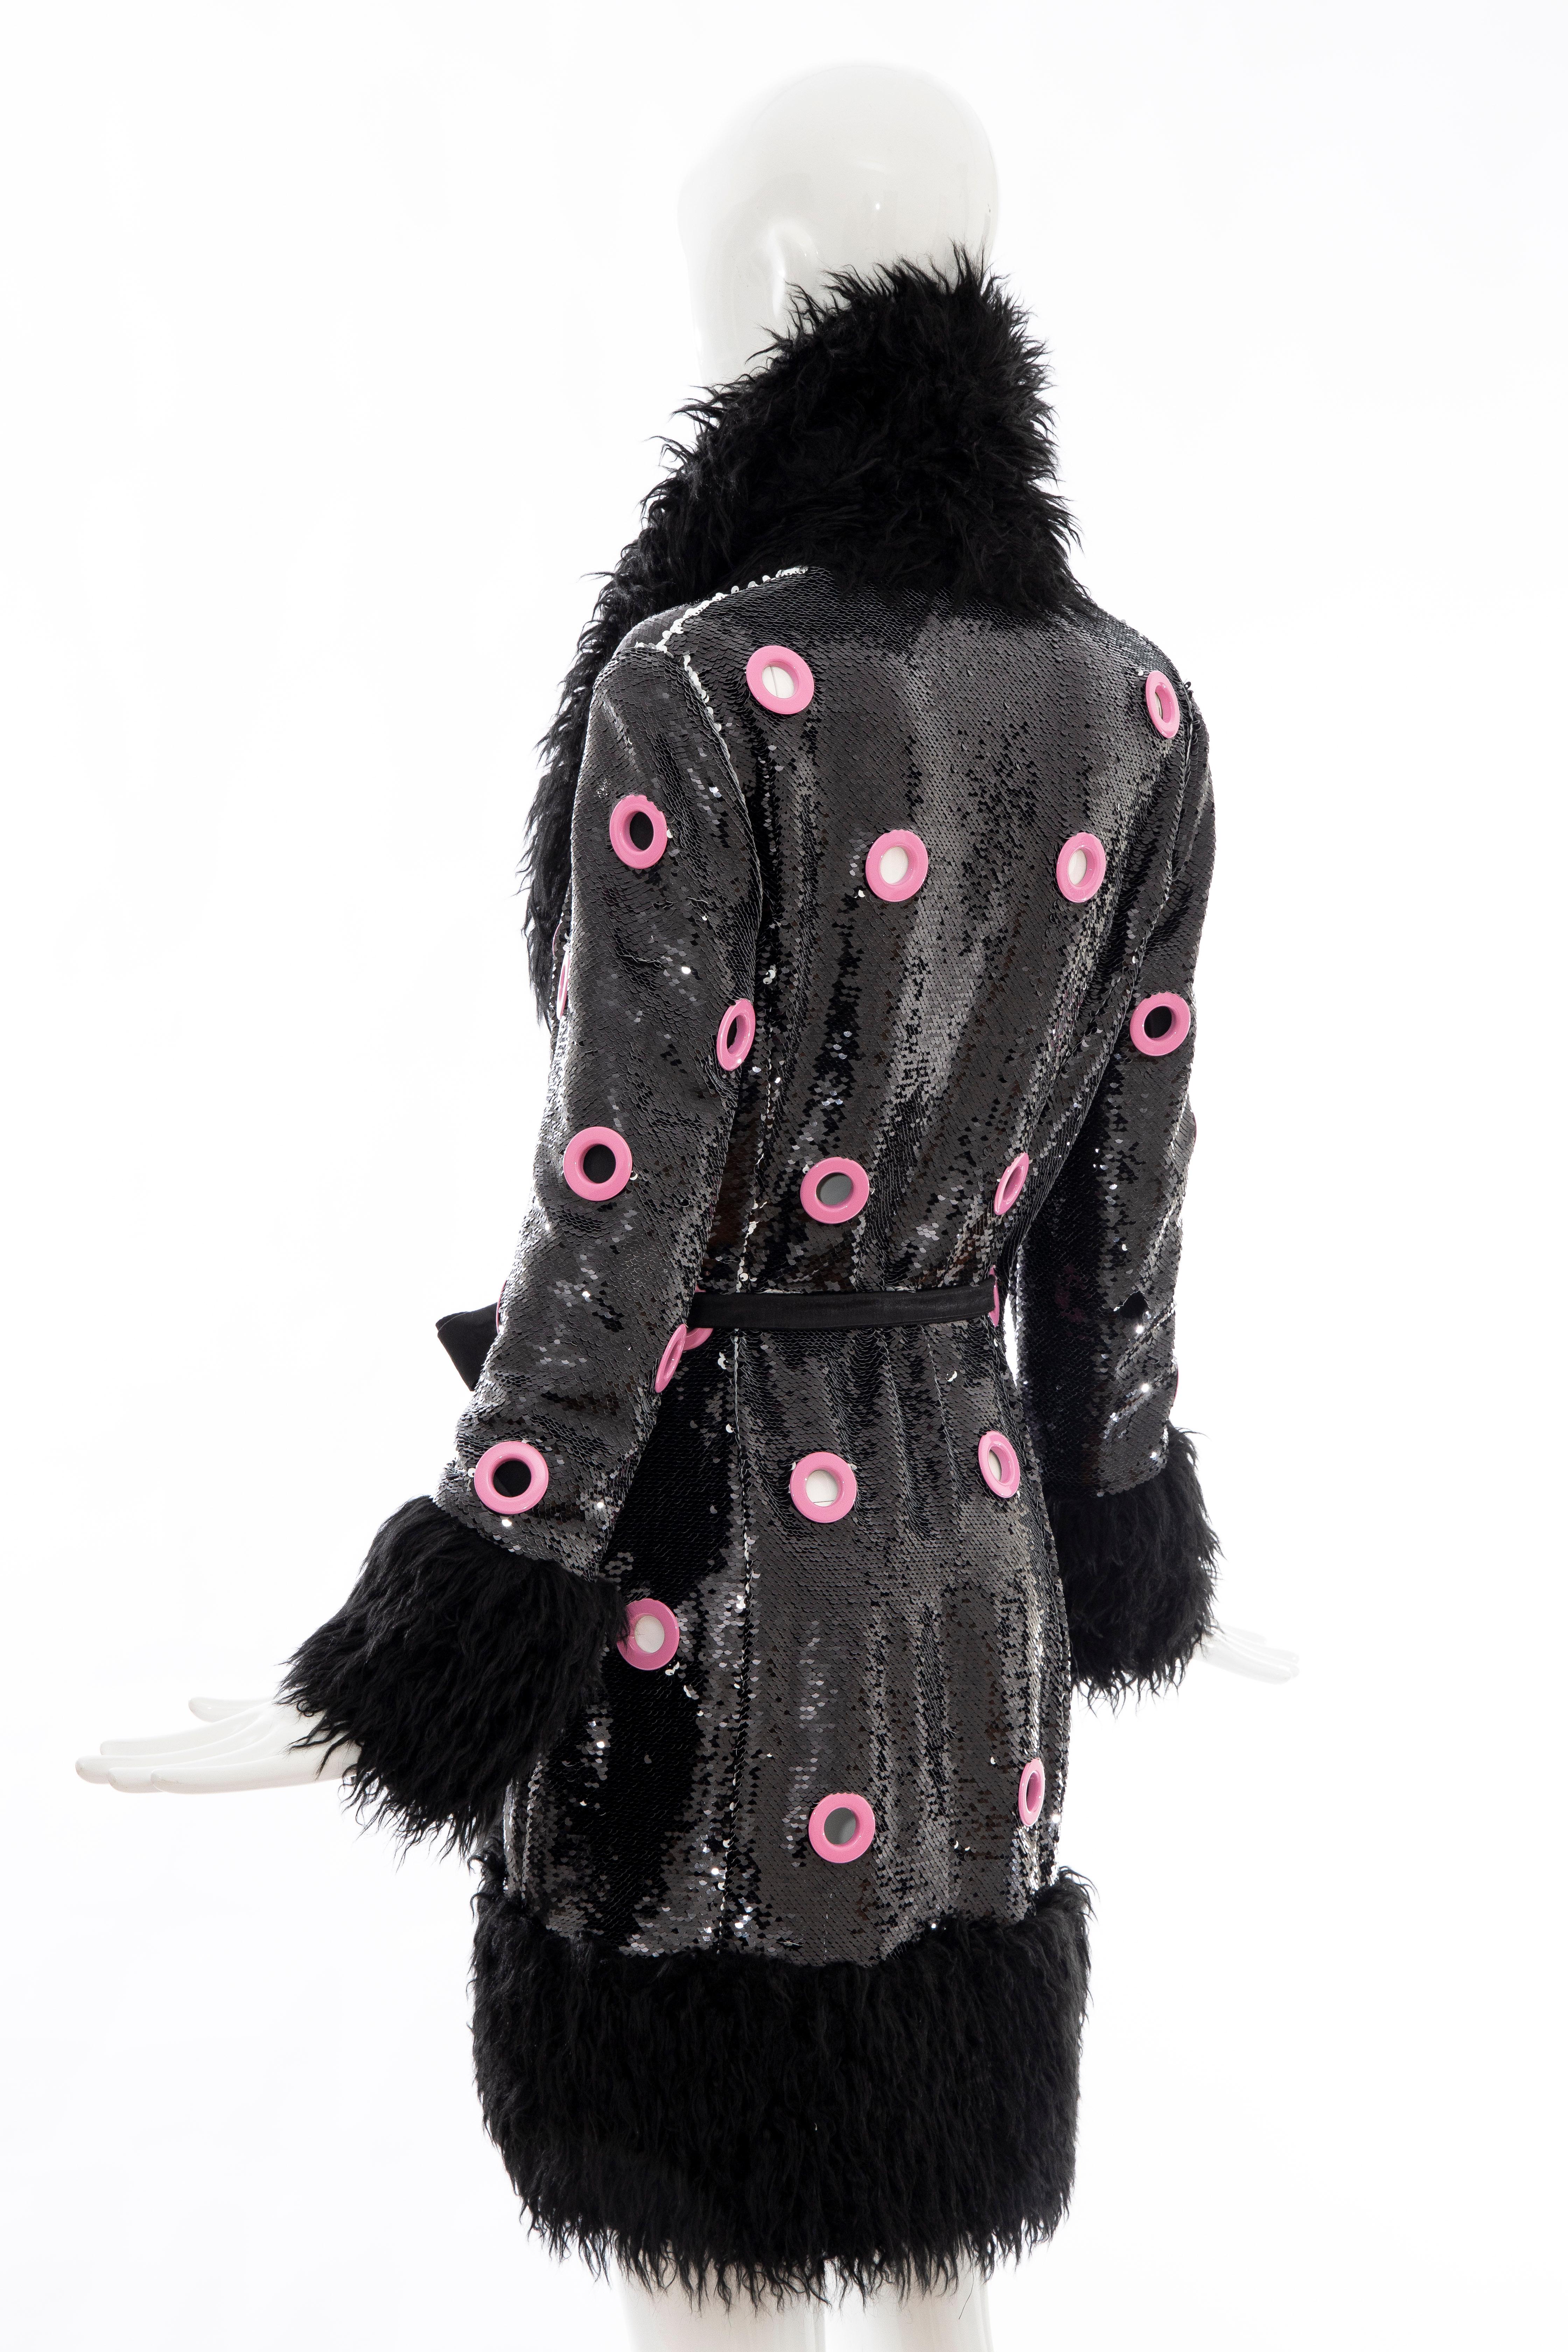 Jeremy Scott Runway Black Sequins Faux Fur Pink Enamel Grommets Coat, Fall 2016 5